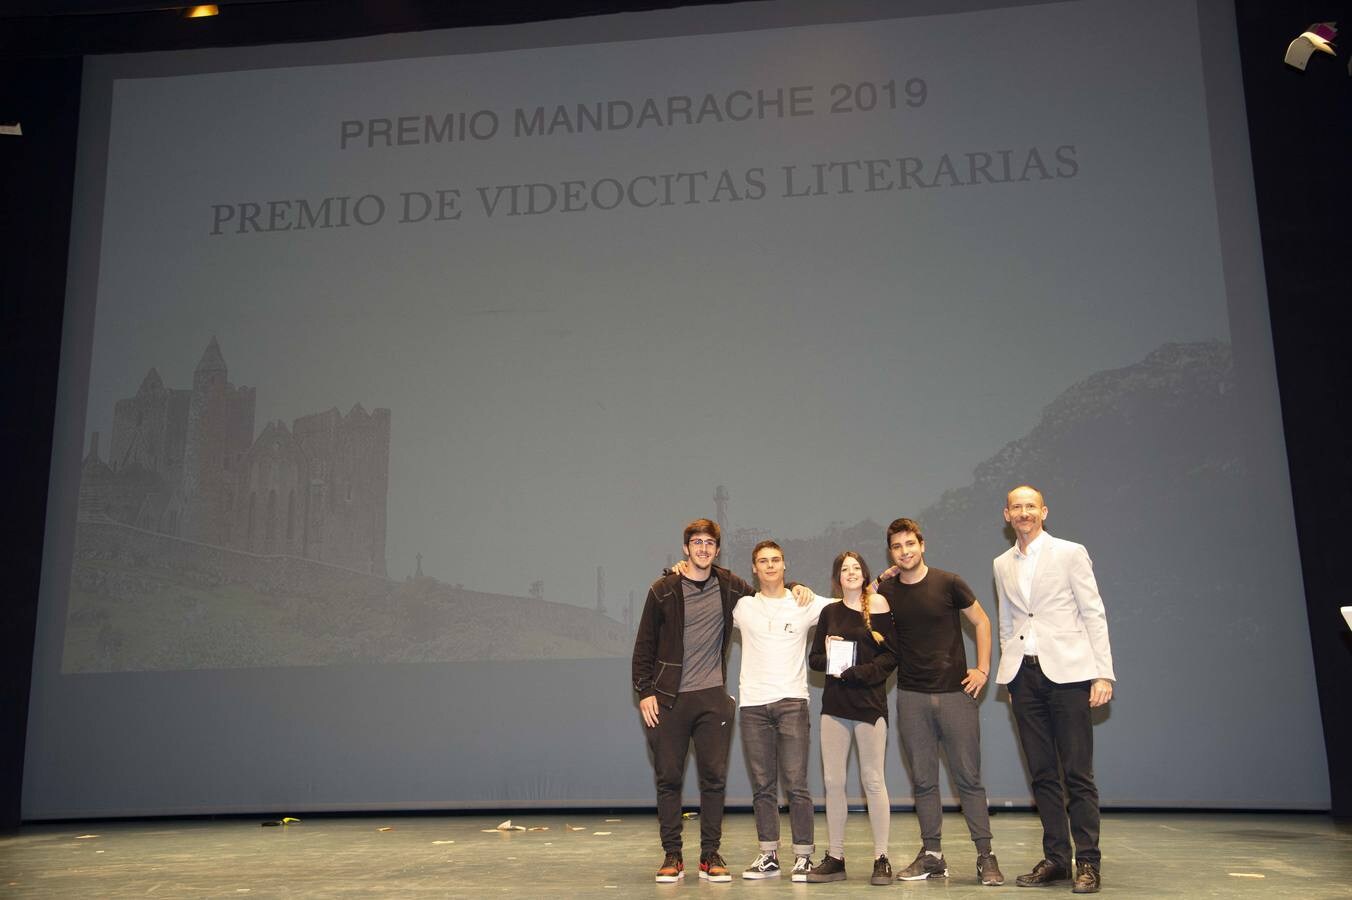 La gala de entrega de la edición 2019 consagra la visión histórica de Lalama y Roca.